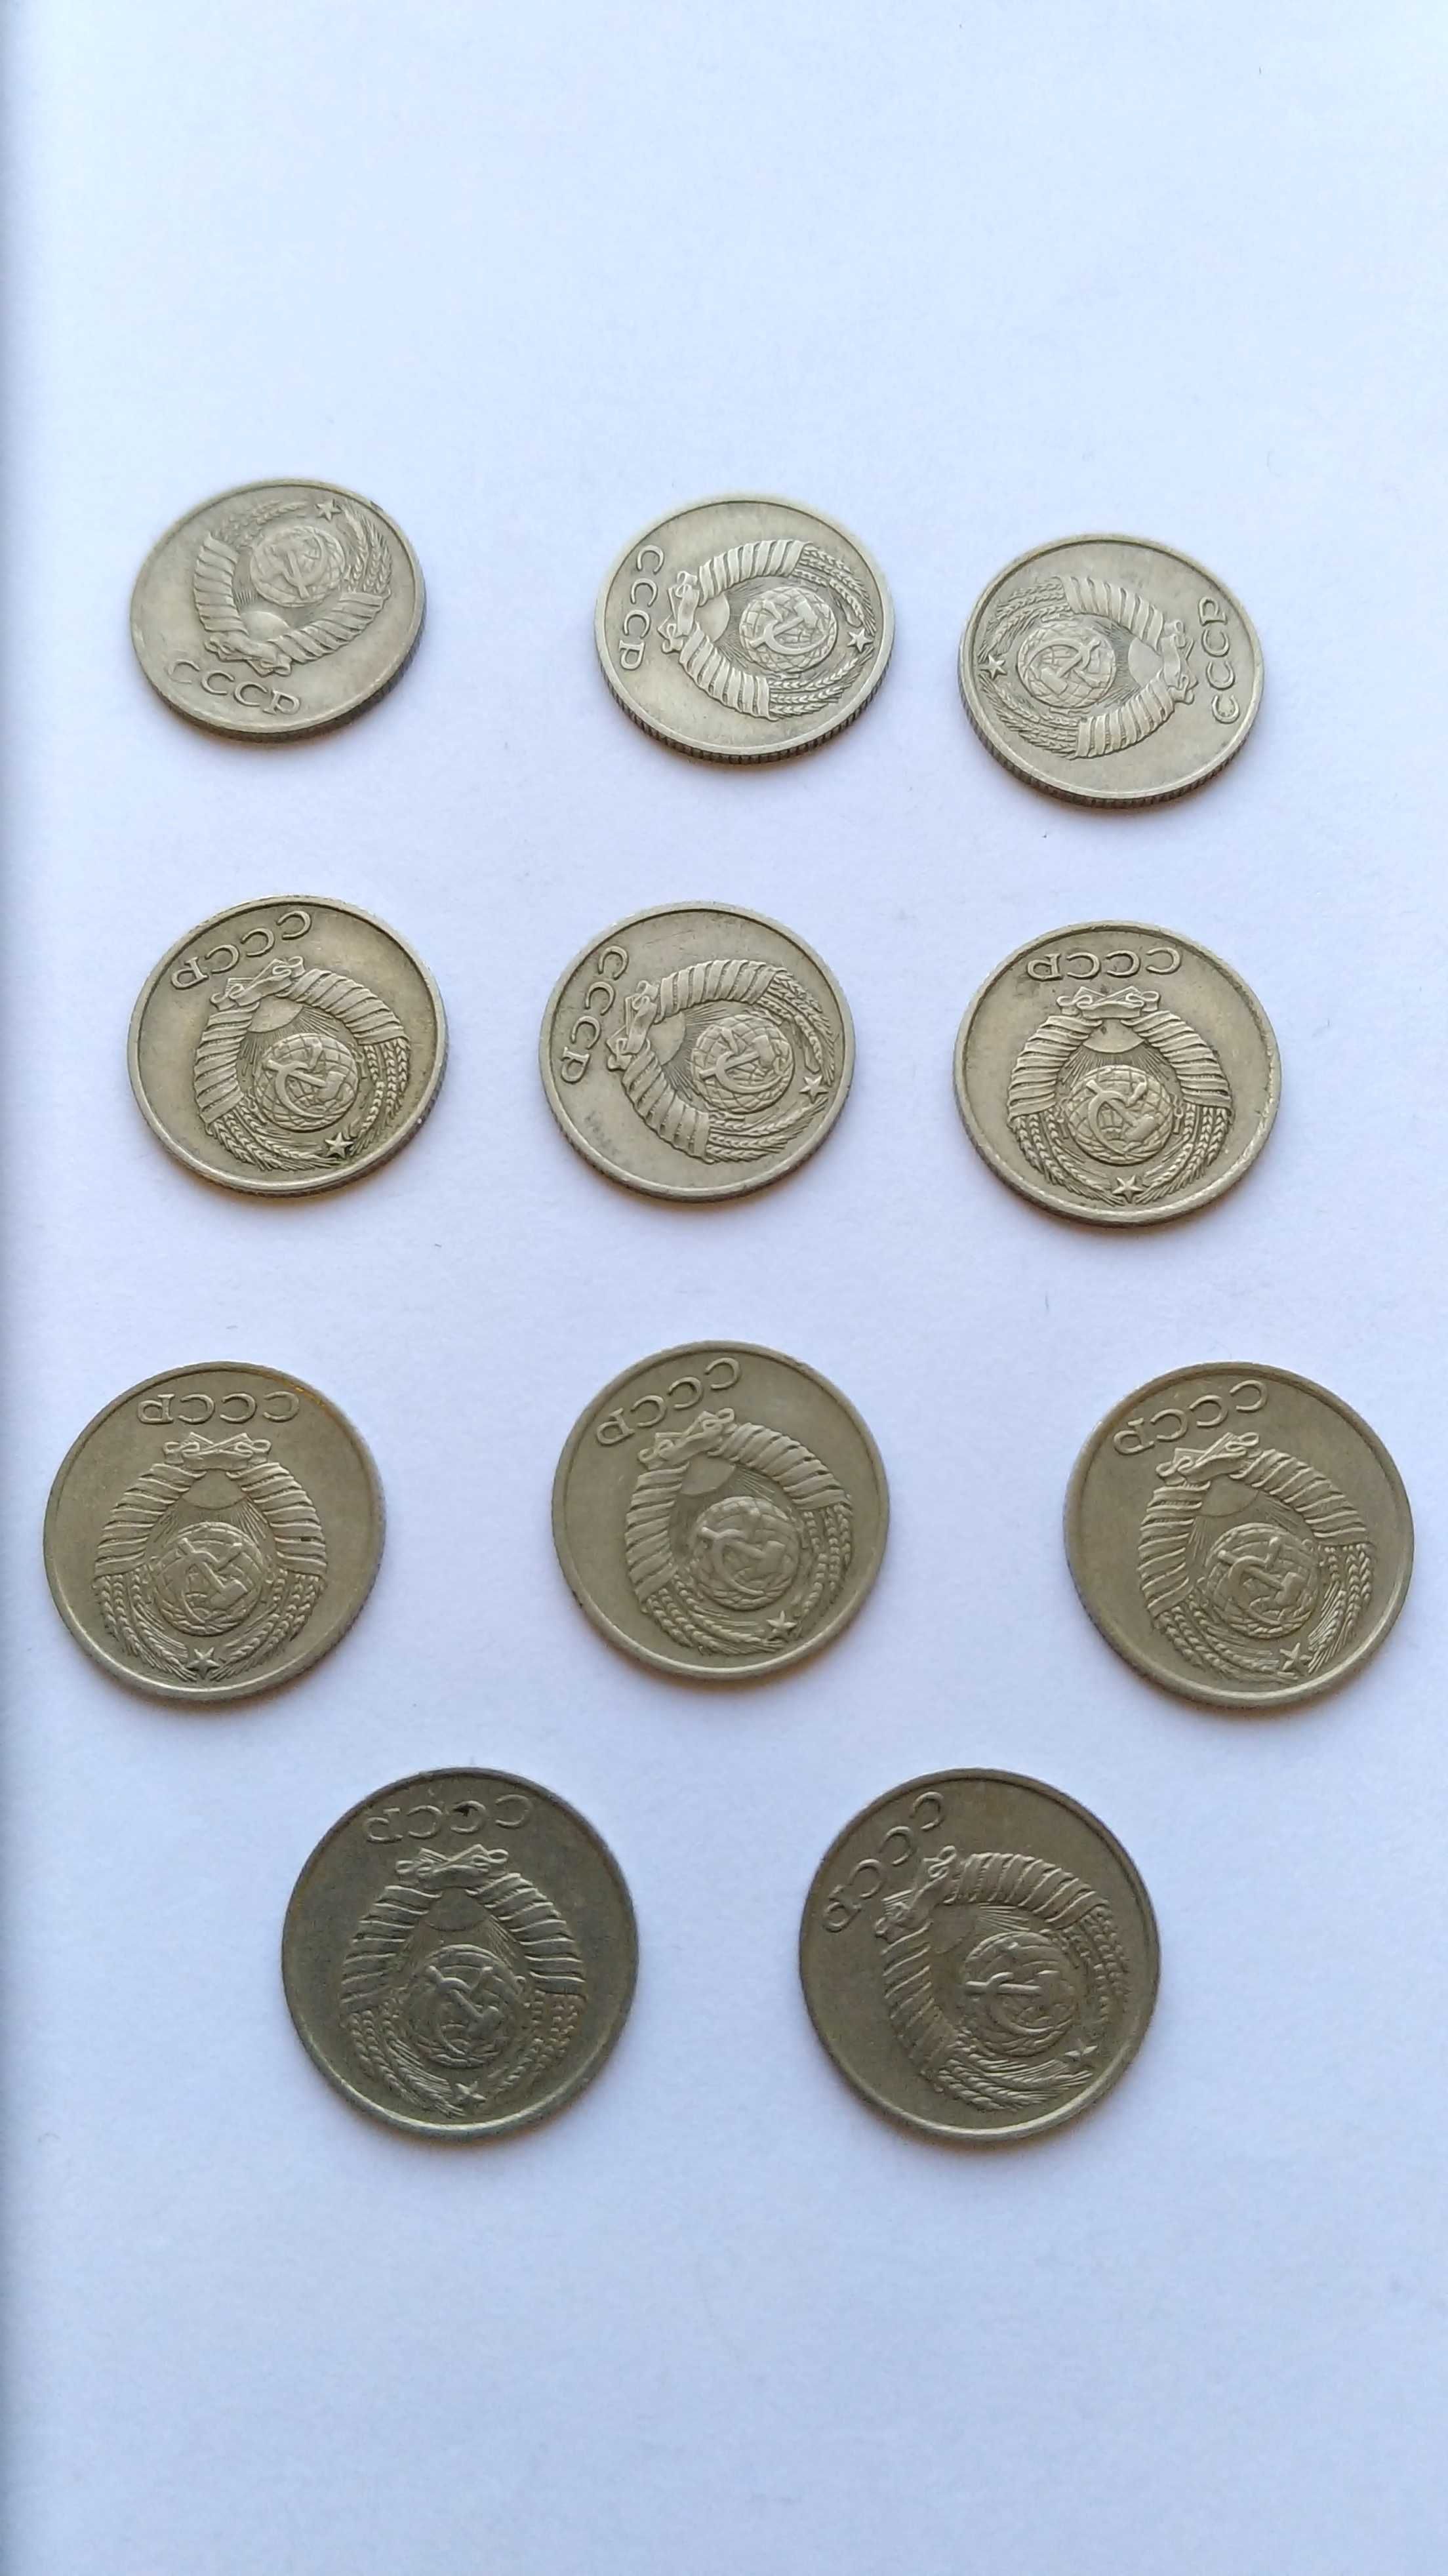 Сет из советских монет номиналом 10 копеек с 1970 по 1980 год (11 шт)